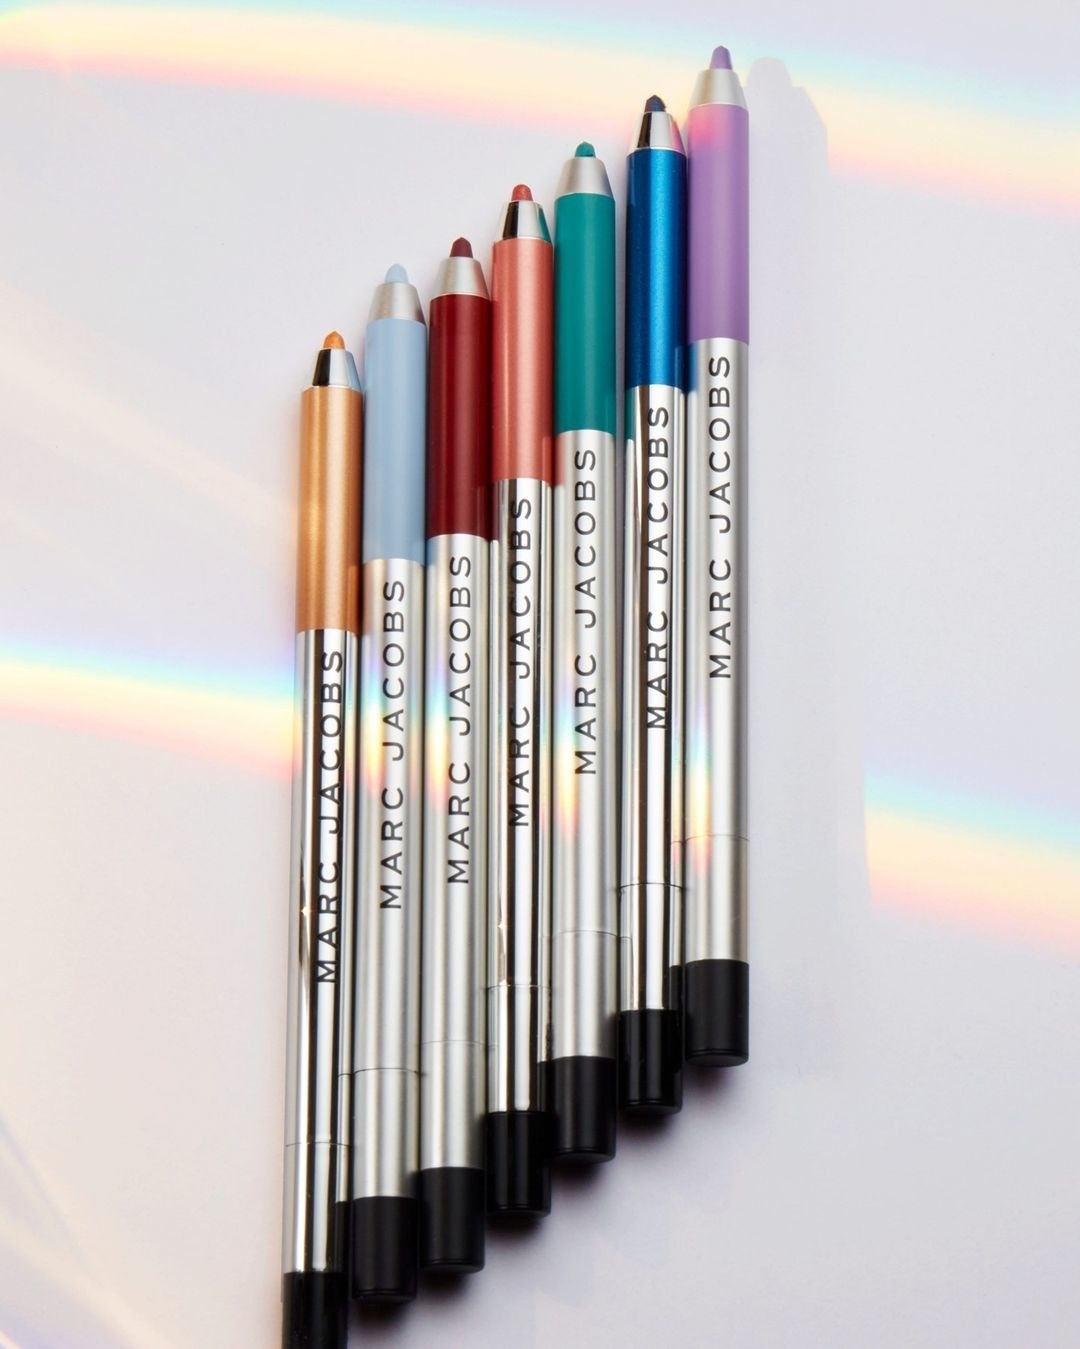 Seven eye pencils in a row